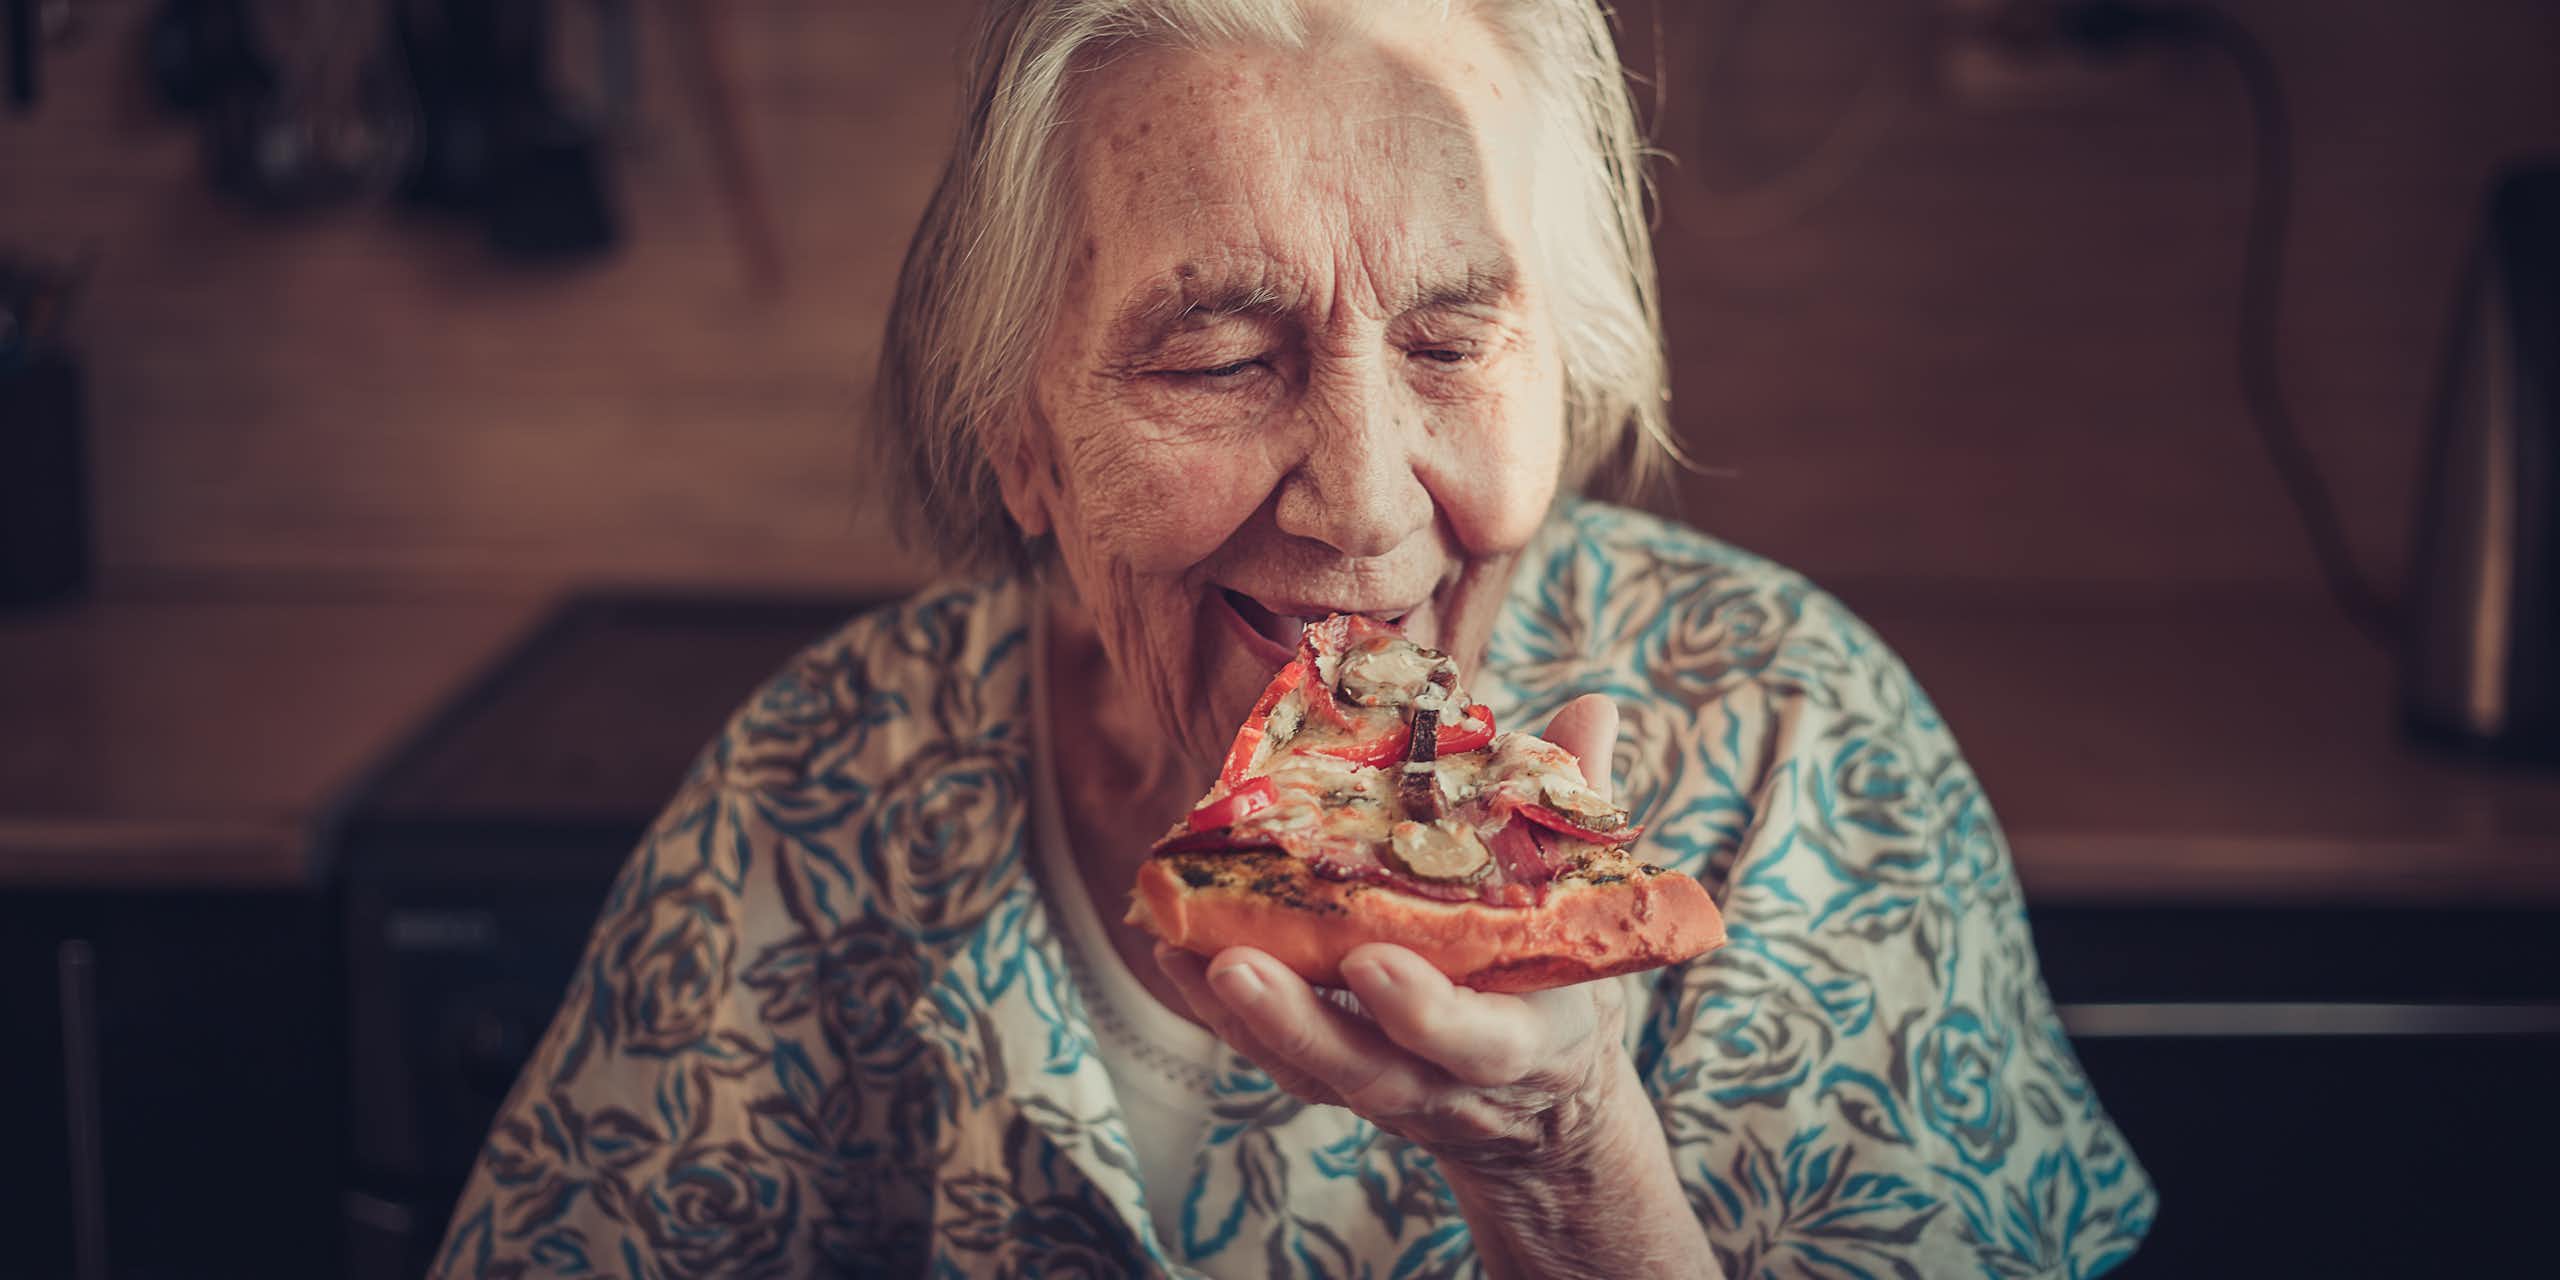 Une femme âgée mangeant une part de pizza